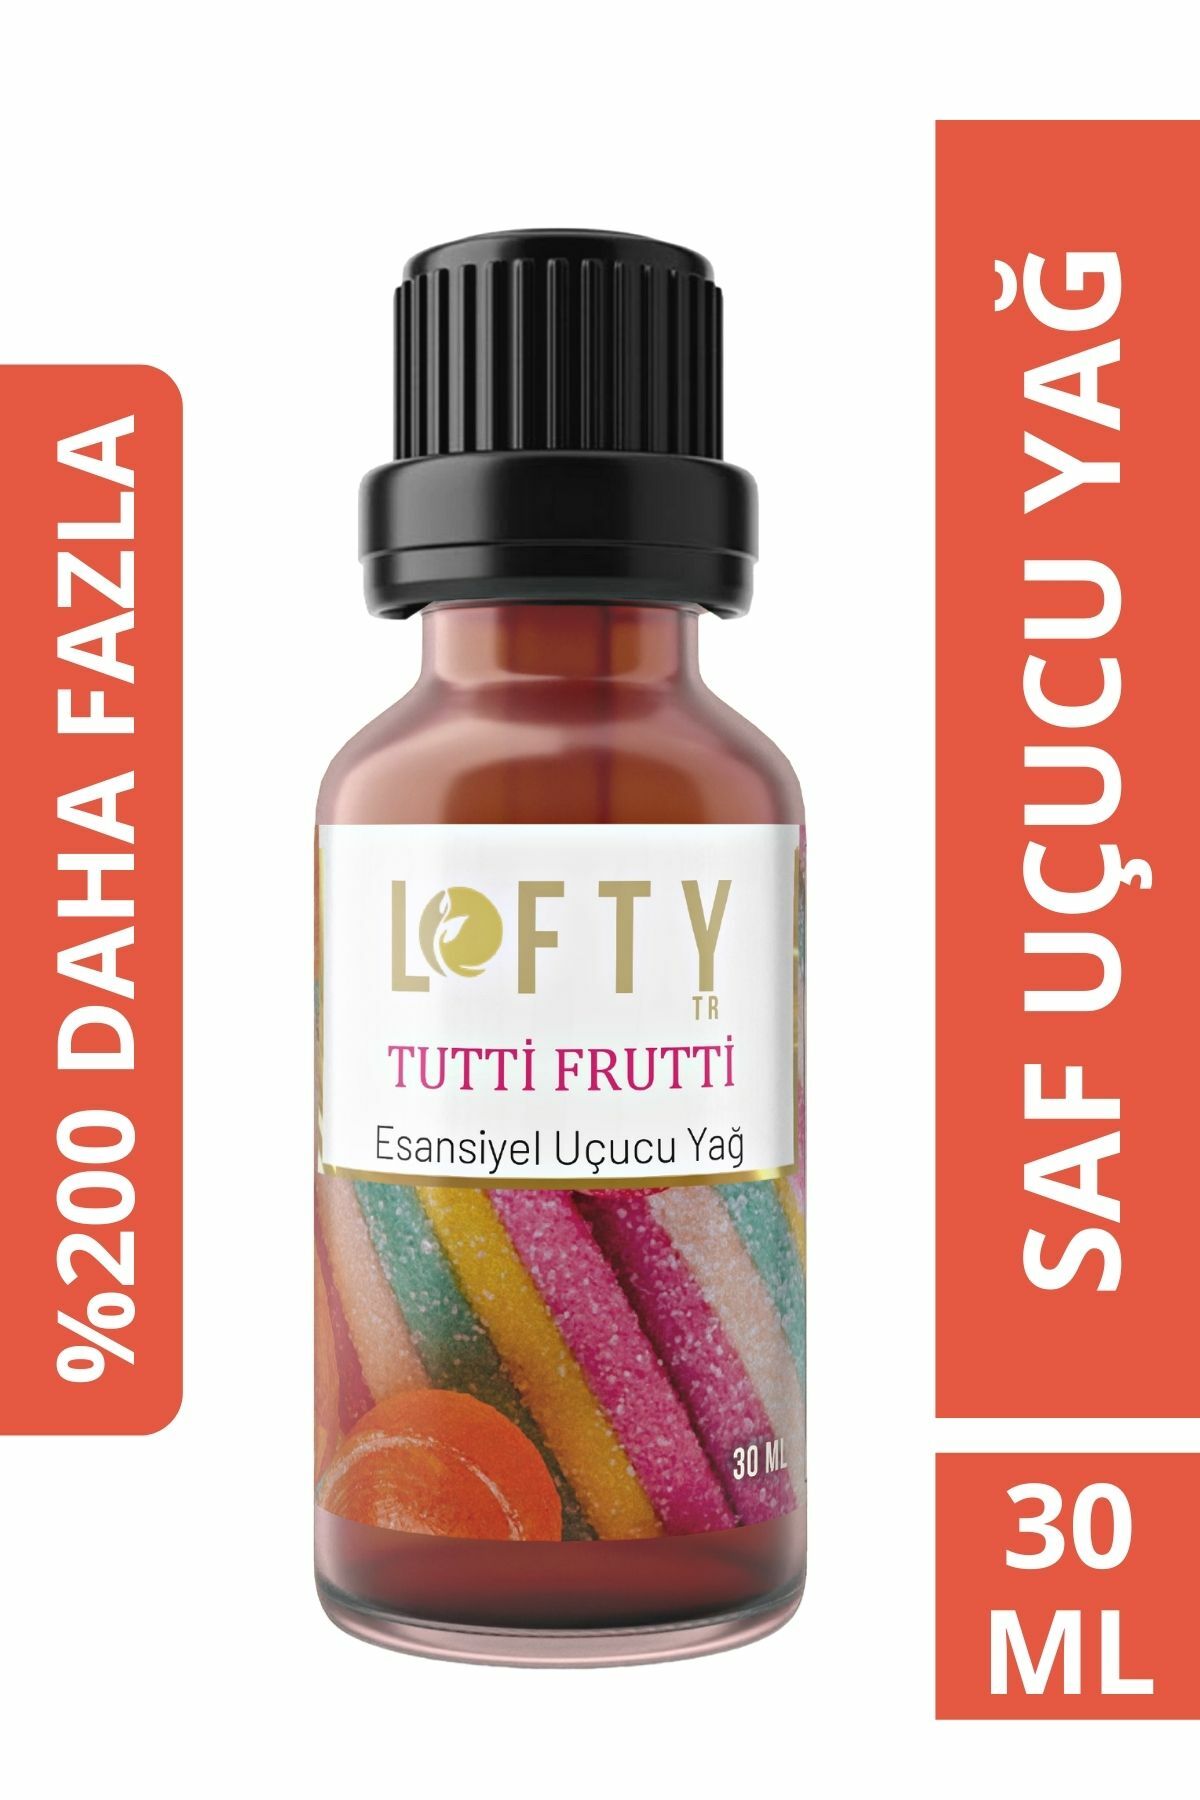 Tutti Frutti Uçucu Yağ Buhurdanlık Esansı Oda Kokusu Esansiyel Yağ Buhur Yağı 30ML